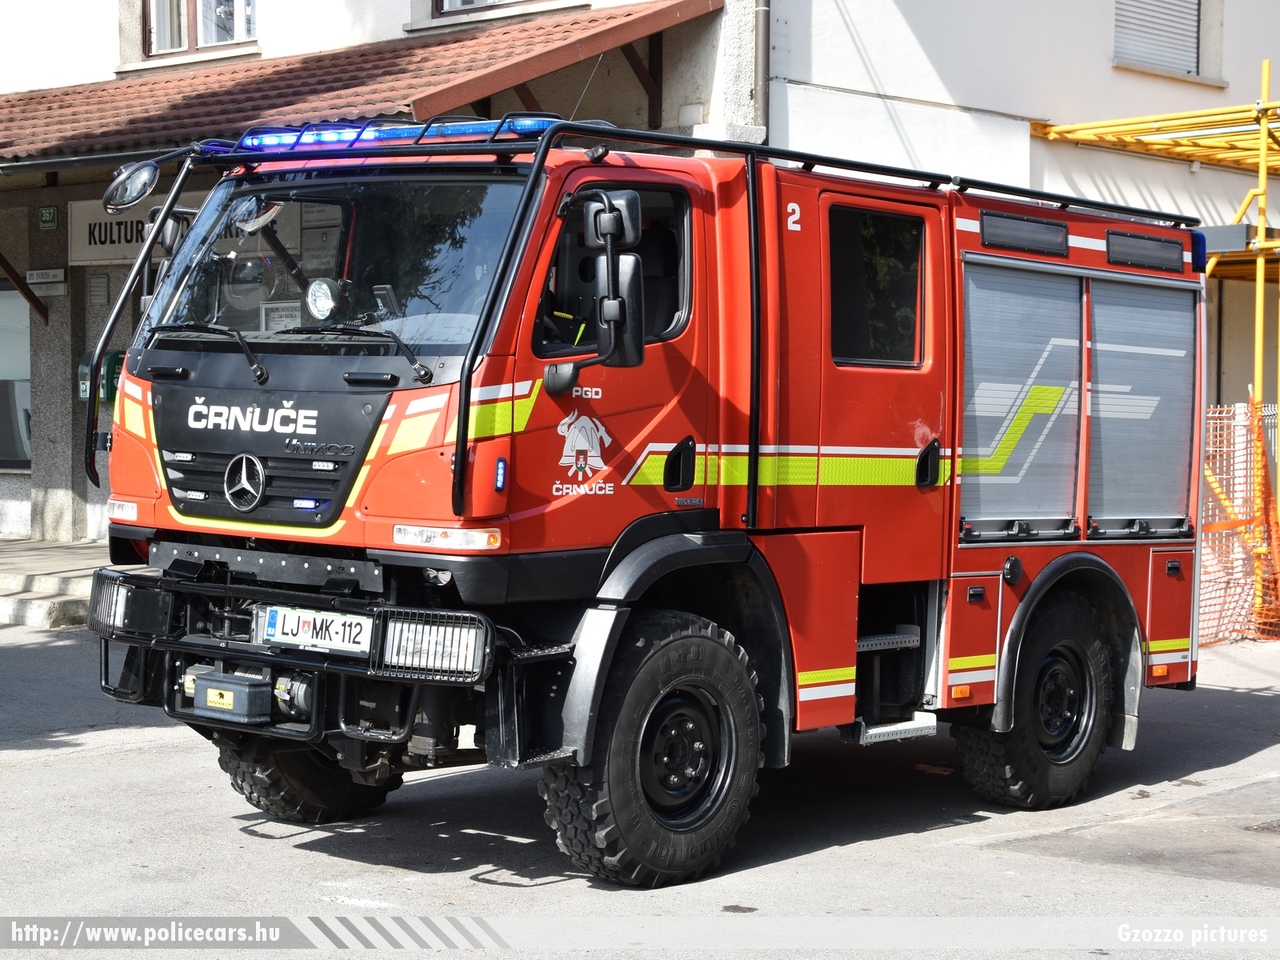 Mercedes-Benz Unimog U20 GCGP-1 GV Pusnik, PGD Crnuce, fotó: Gzozzo pictures
Keywords: szlovén Szlovénia tûzoltóautó tûzoltóság tûzoltó slovenian Slovenia fire firetruck